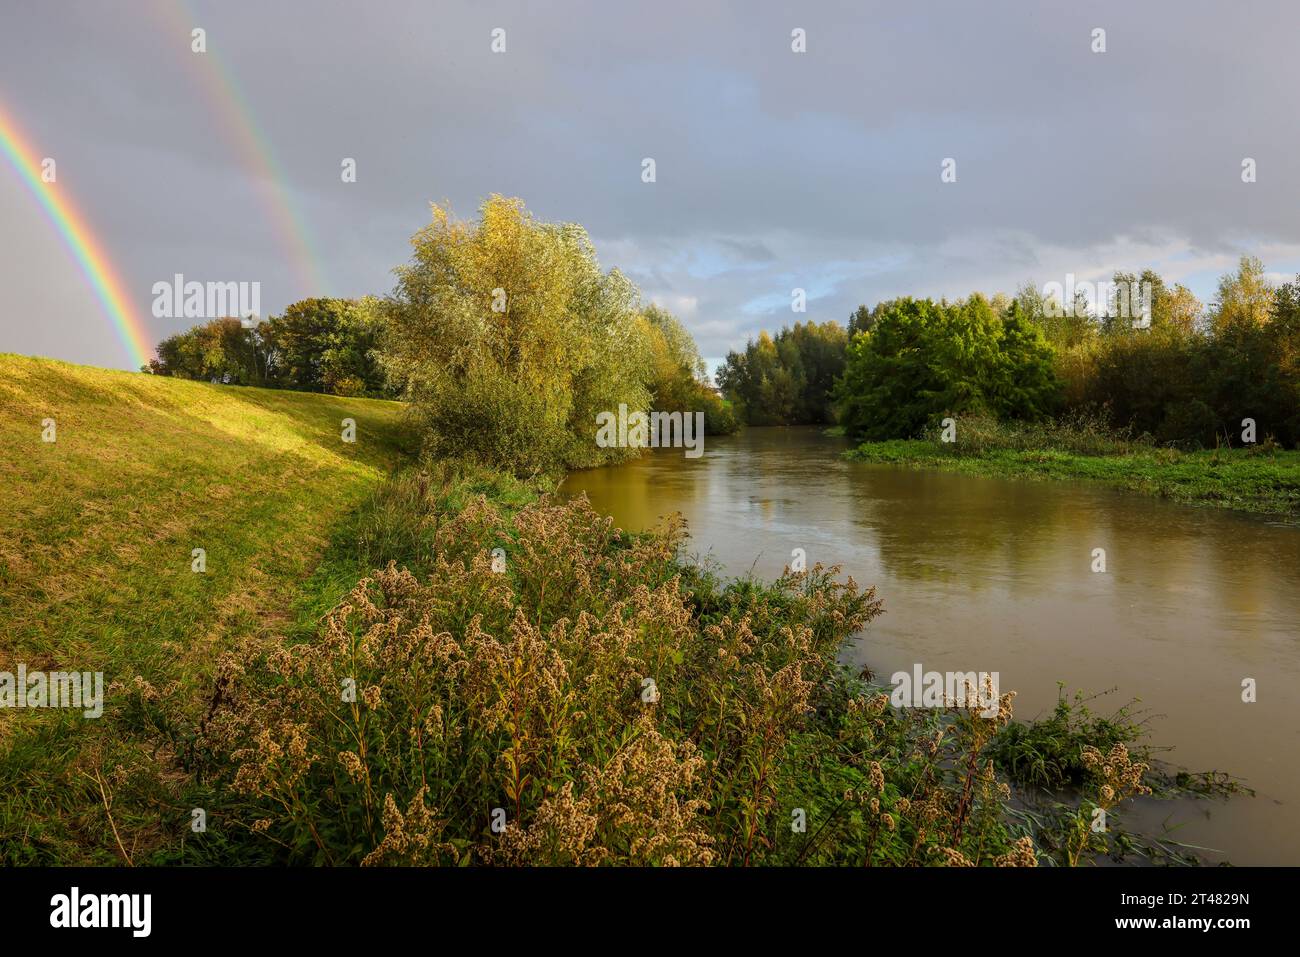 Bergkamen, Ruhrgebiet, Nordrhein-Westfalen, Deutschland - Herbstlandschaft mit Regenbogen an der Seseke. Die renaturierte Seseke, ein Nebenfluss der Lipp Stockfoto